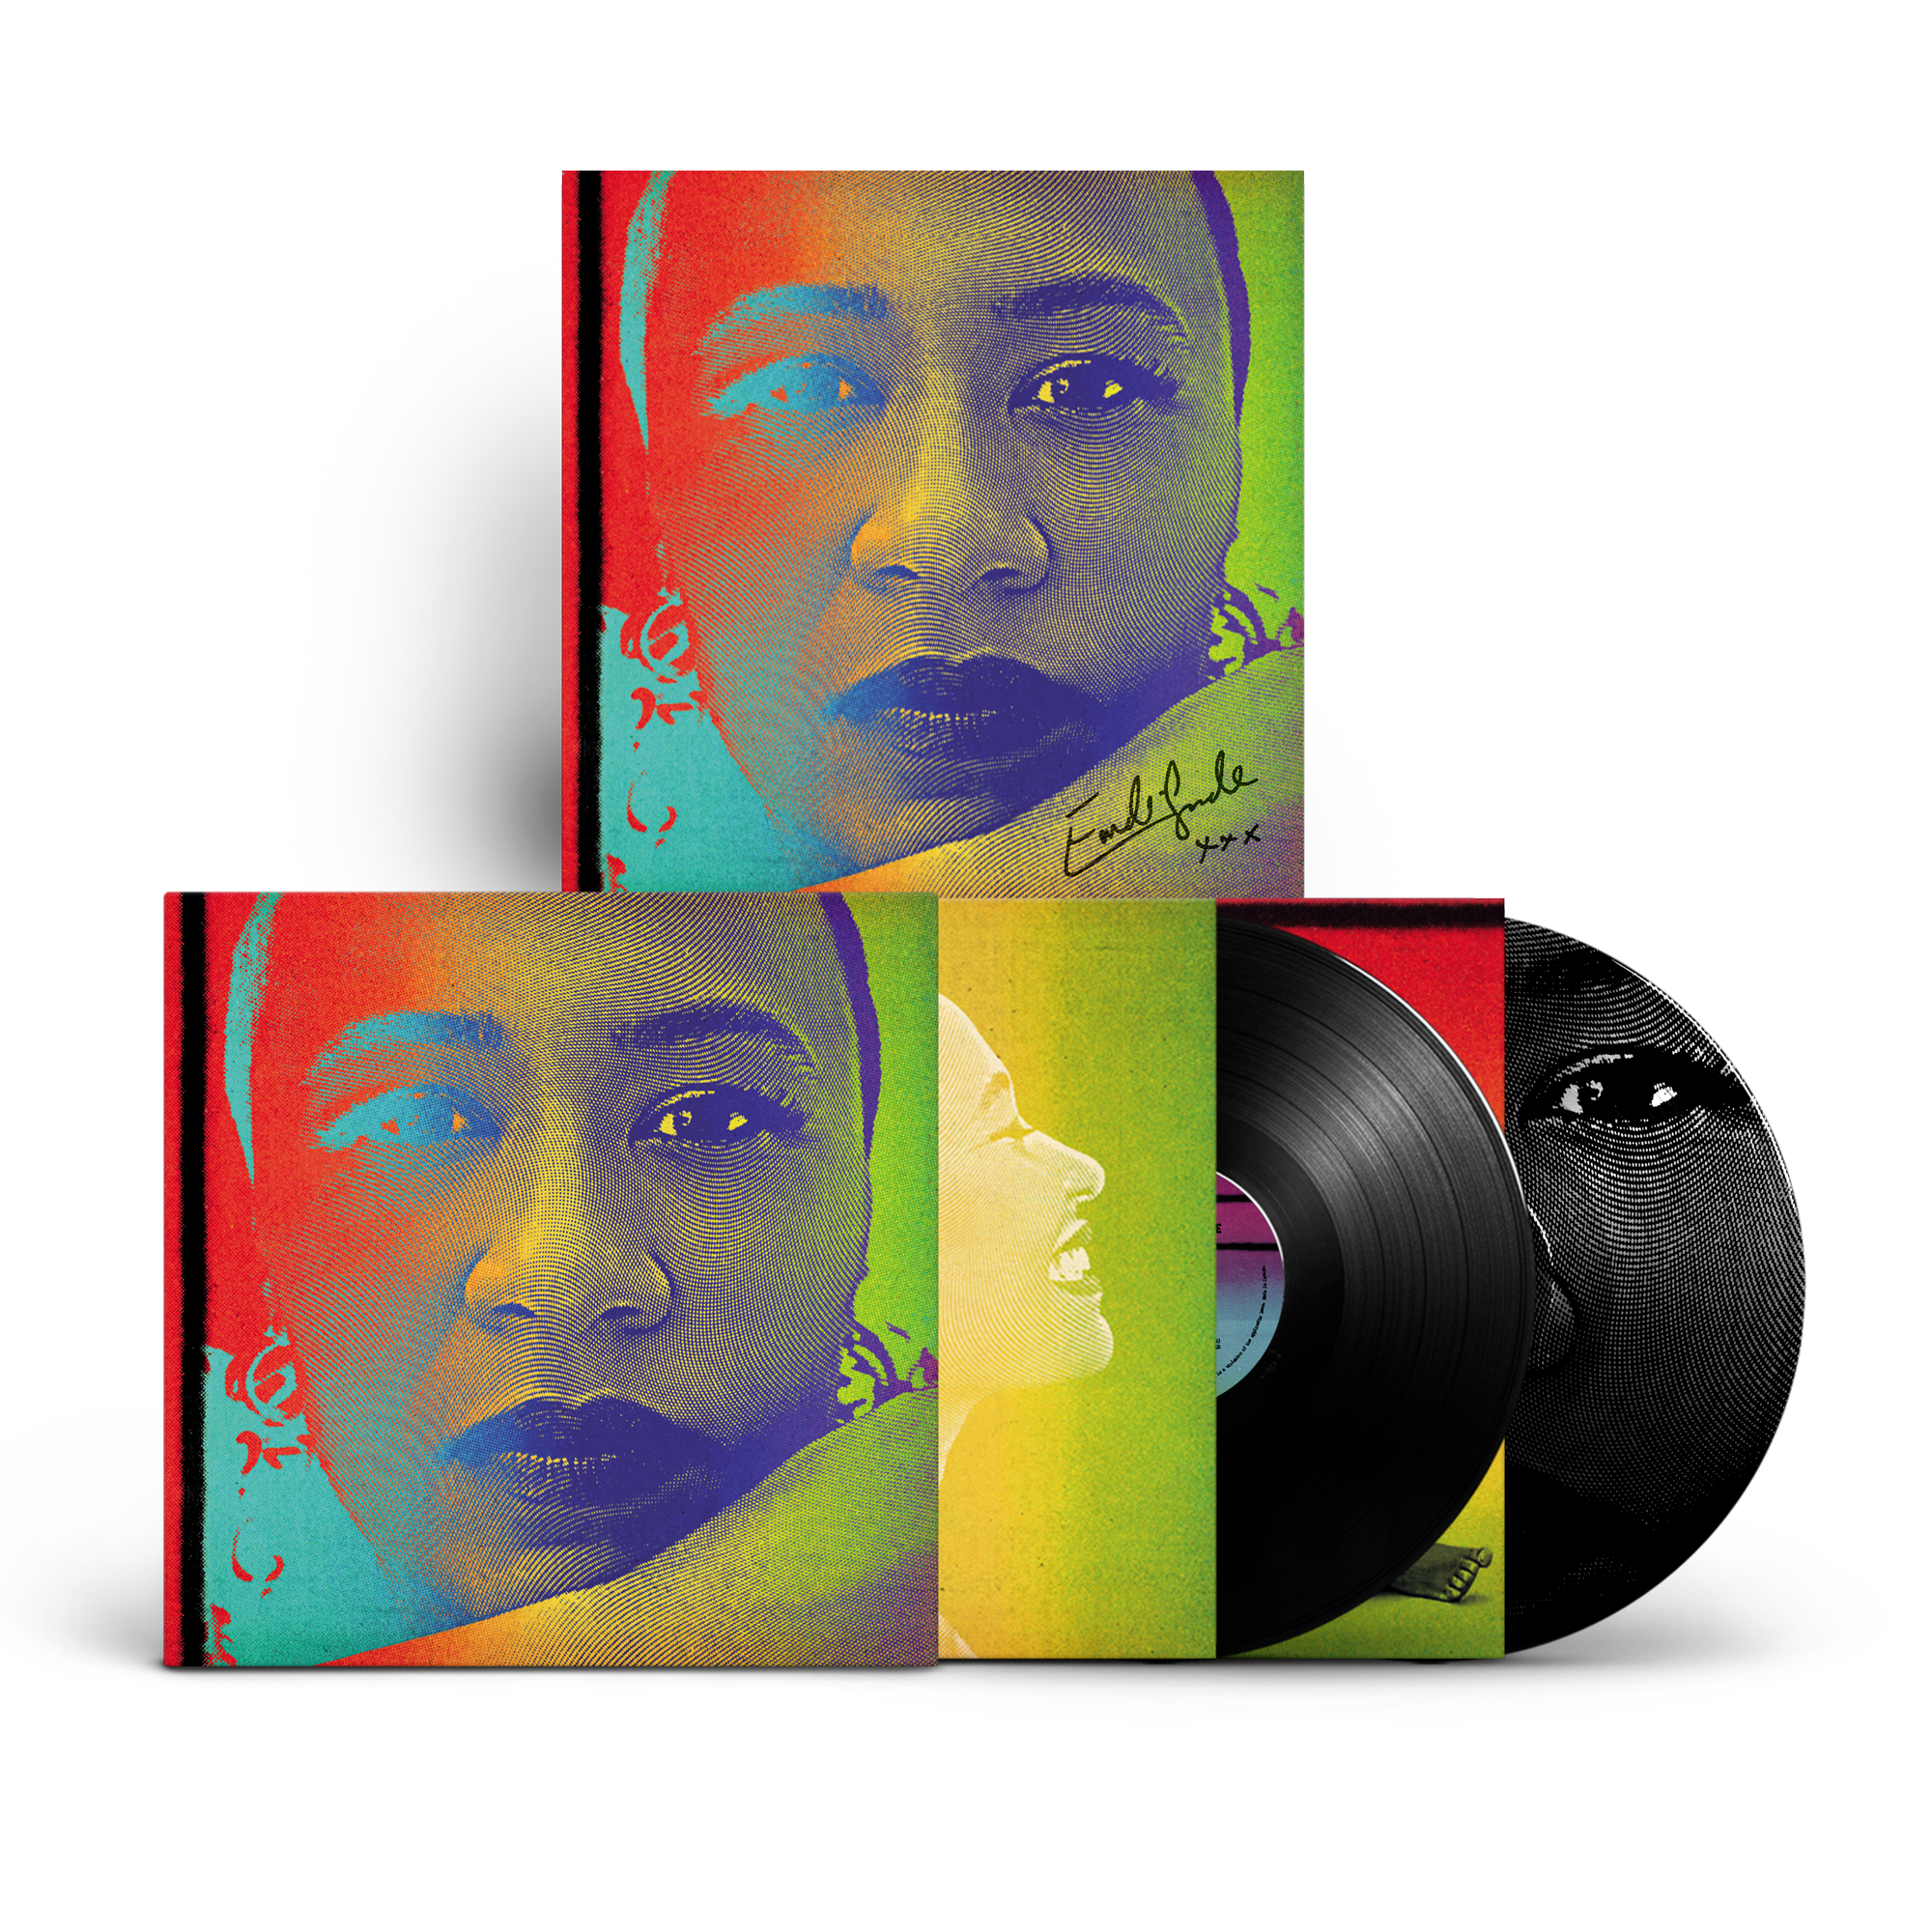 Emeli Sande - Let's Say For Instance: Limited Edition Vinyl 2LP + Signed Art Print